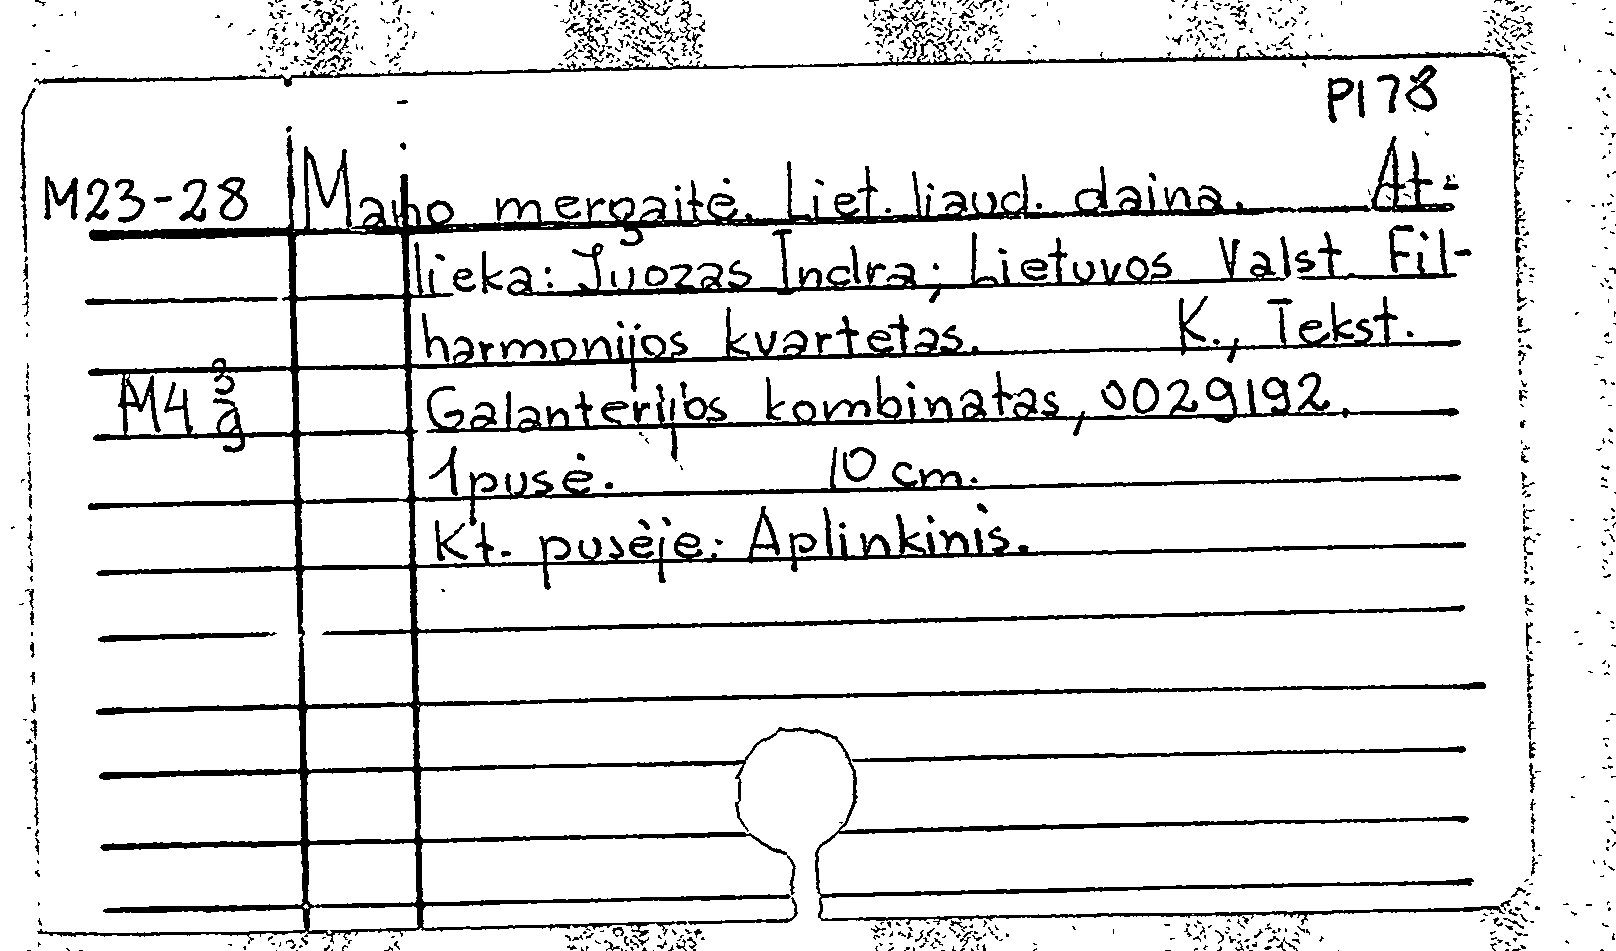 Mano mergaite / Aplinkinis (на литовском языке)